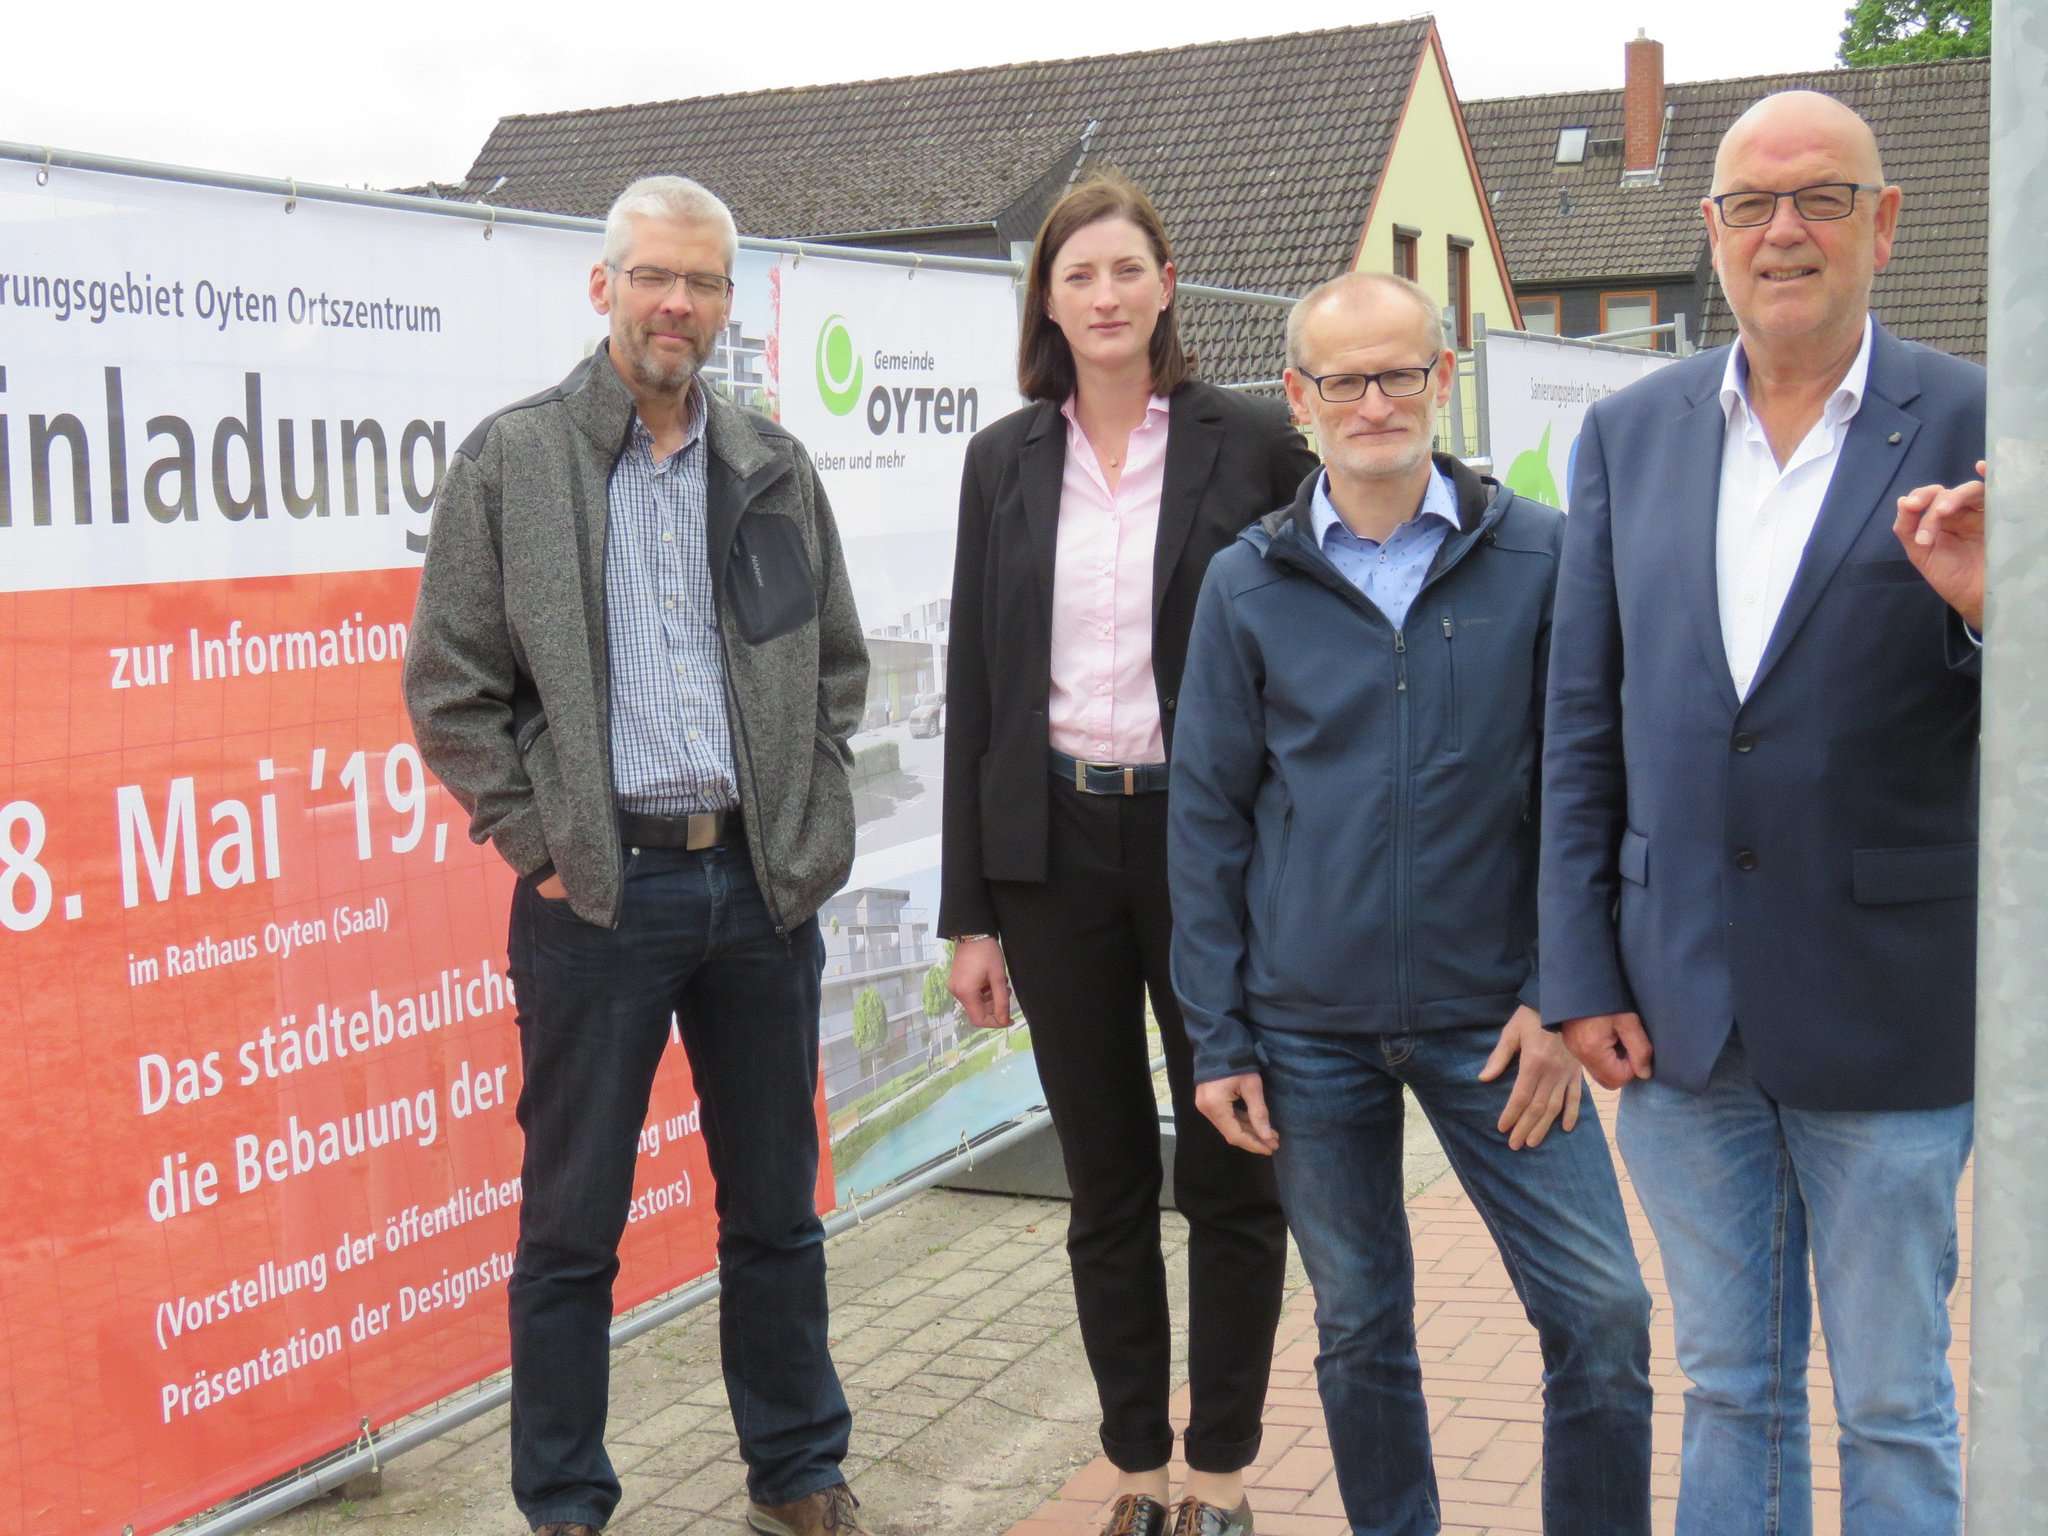 Guido Kahle (von links), Isa Zipperling, Wolfgang Röttjer und Manfred Cordes vor dem Bauschild, das auf die Info-Veranstaltung am 28. Mai hinweist. Foto: Elke Keppler-Rosenau